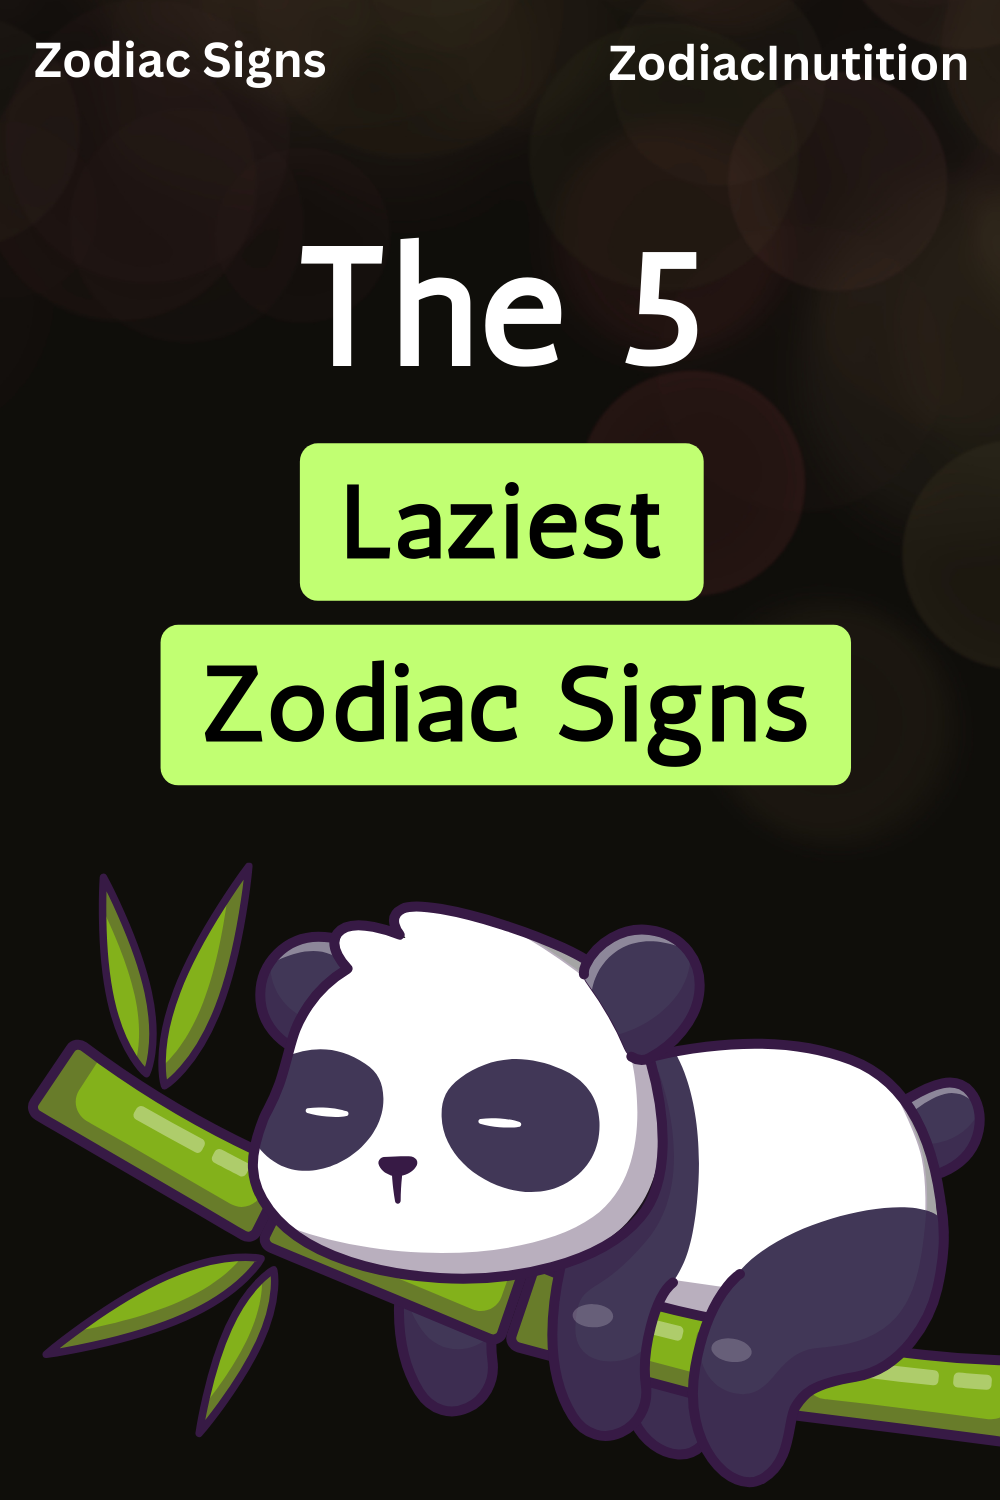 The 5 Laziest Zodiac Signs